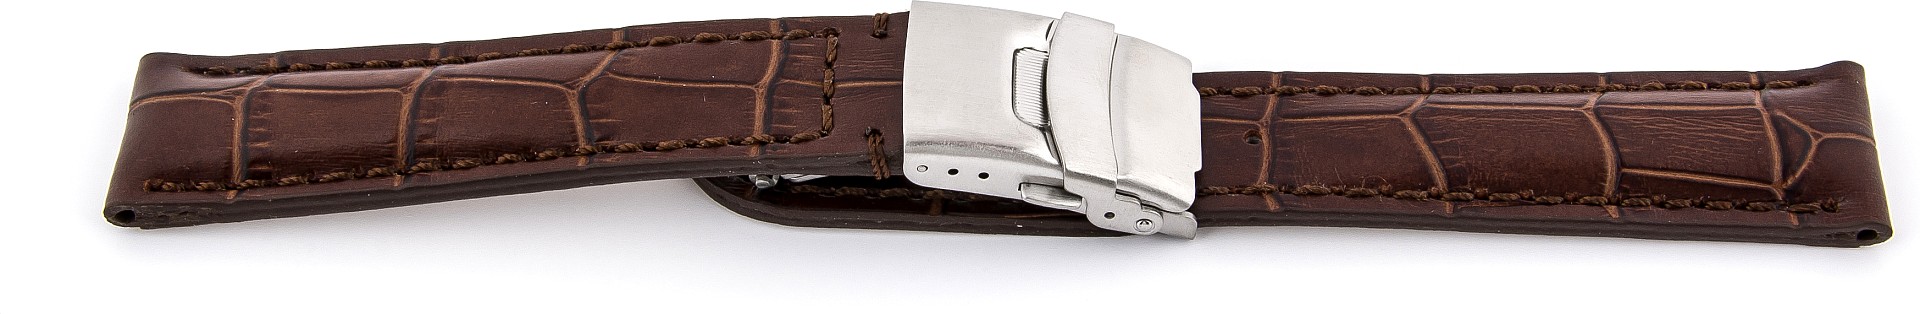   Uhrenarmband Kroko-Look 17J Faltschließe - Leder, geprägt - dunkelbraun mit brauner Naht 